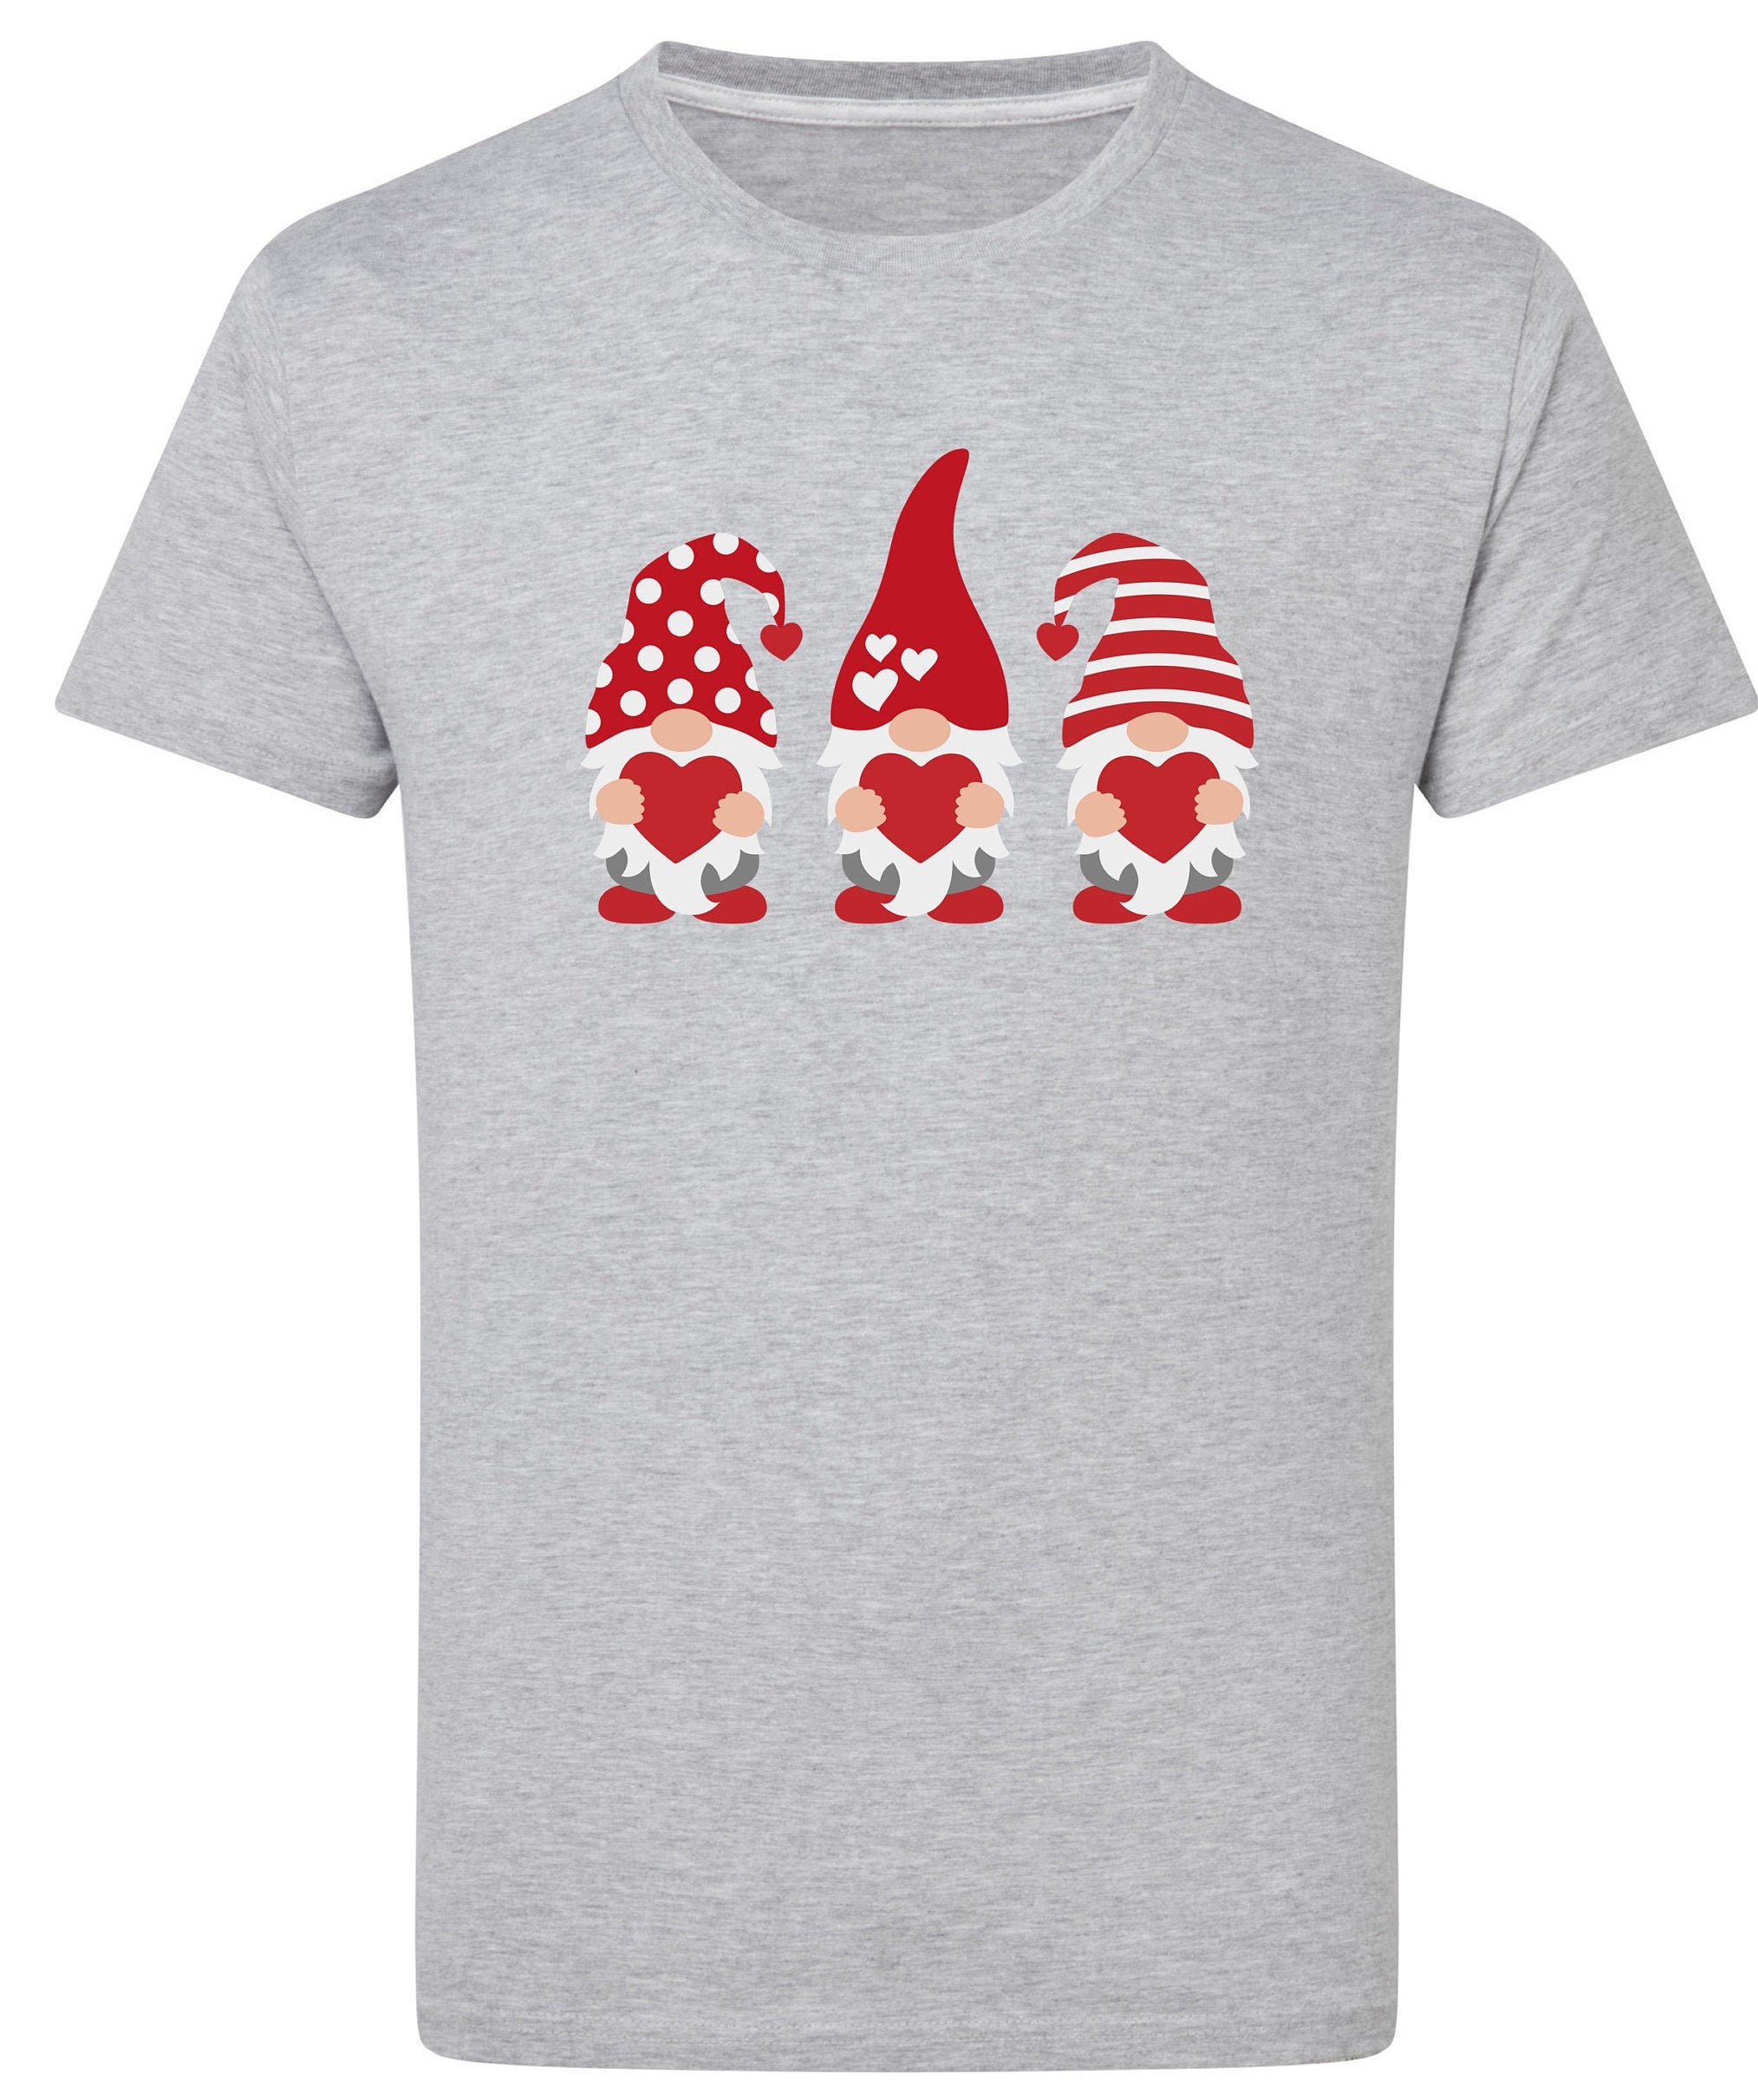 Gnomes Tshirt Fun T-shirt Tshirt Fashion T-shirt Summer - Etsy UK